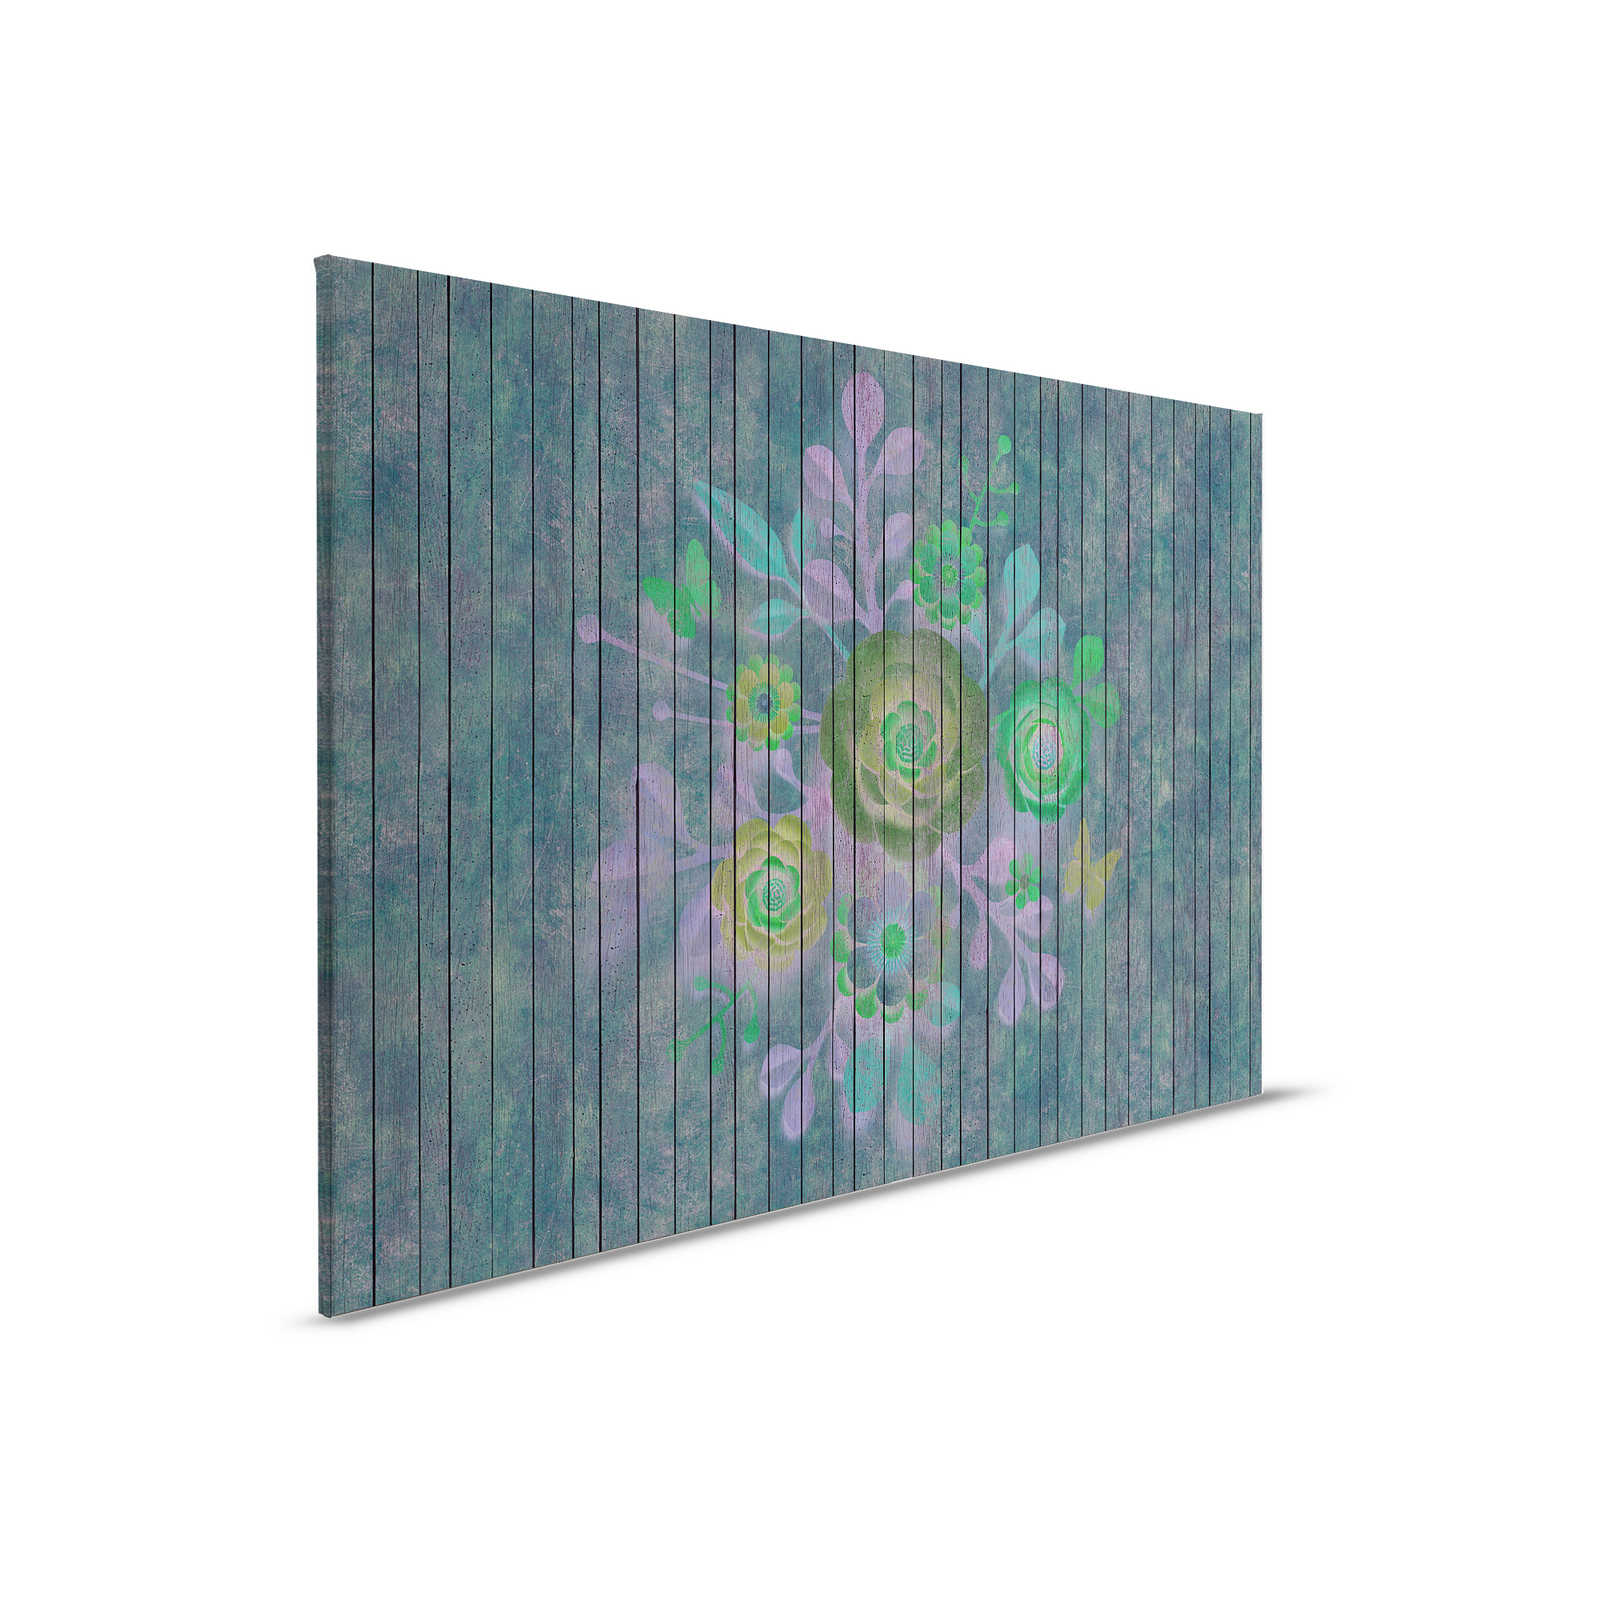 Spray bouquet 2 - Pintura sobre lienzo en estructura de panel de madera con flores sobre pared de tablero - 0,90 m x 0,60 m
